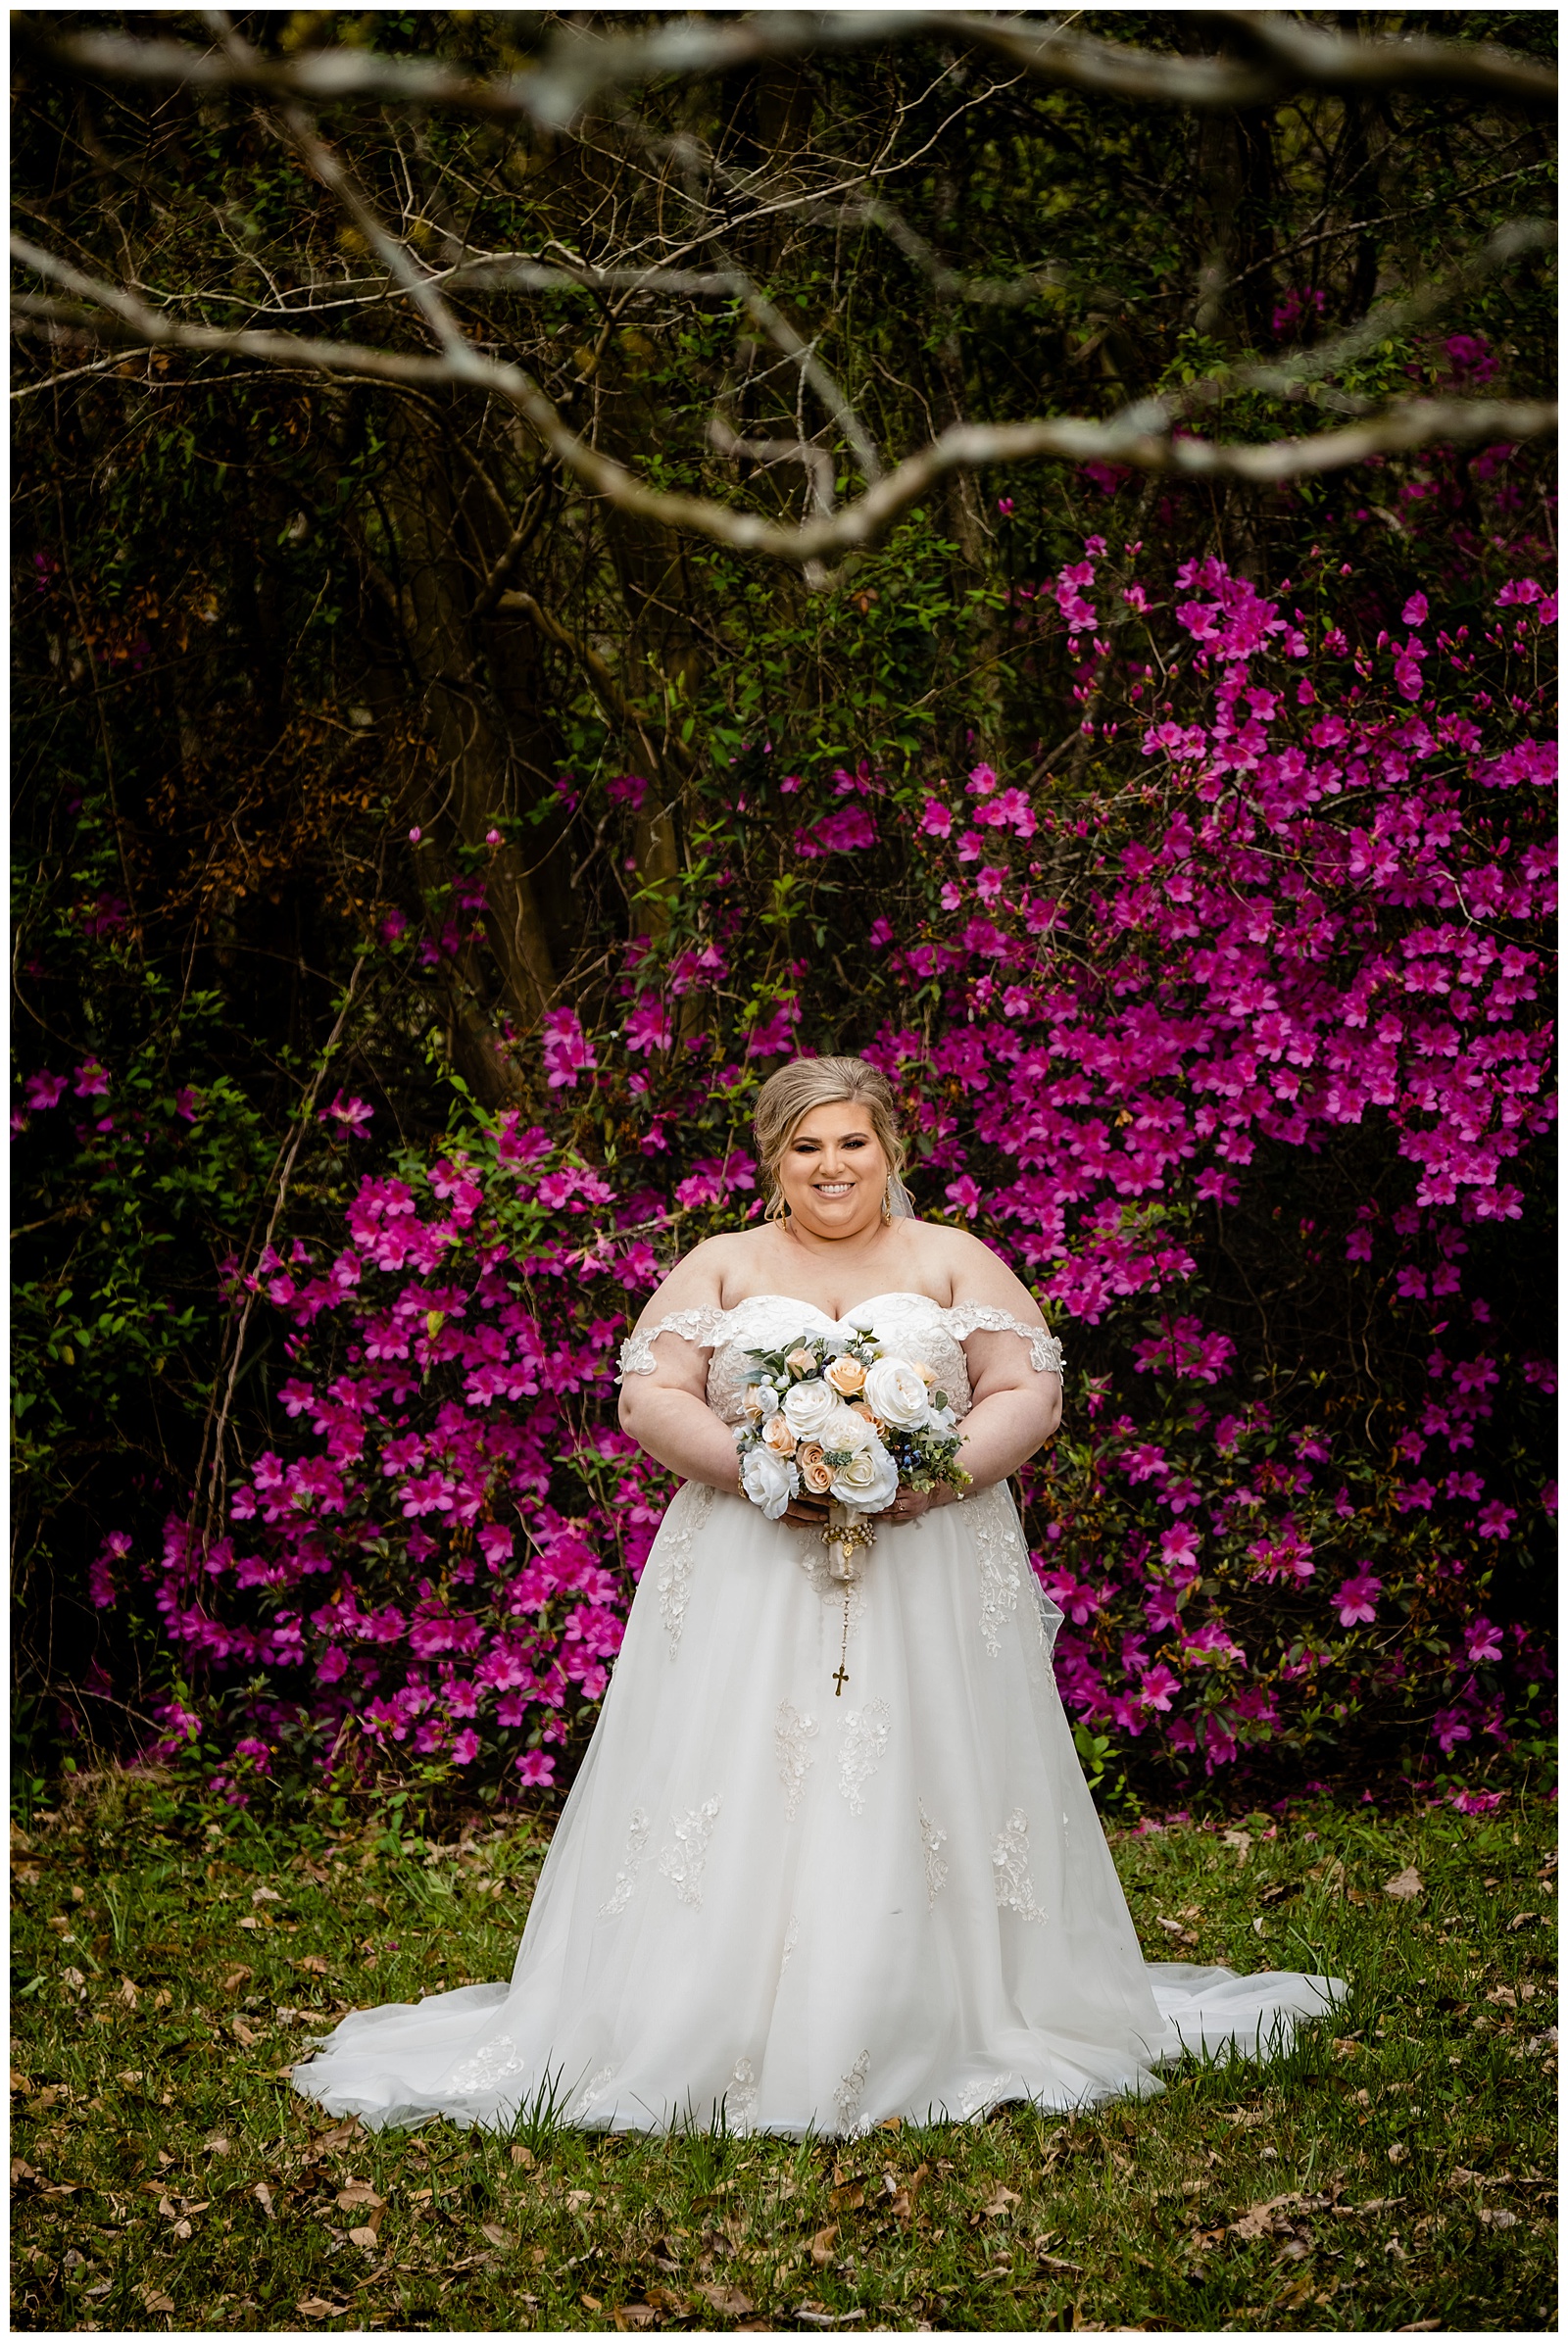 Garden bridal photo in Baton Rouge at Barton Arboretum